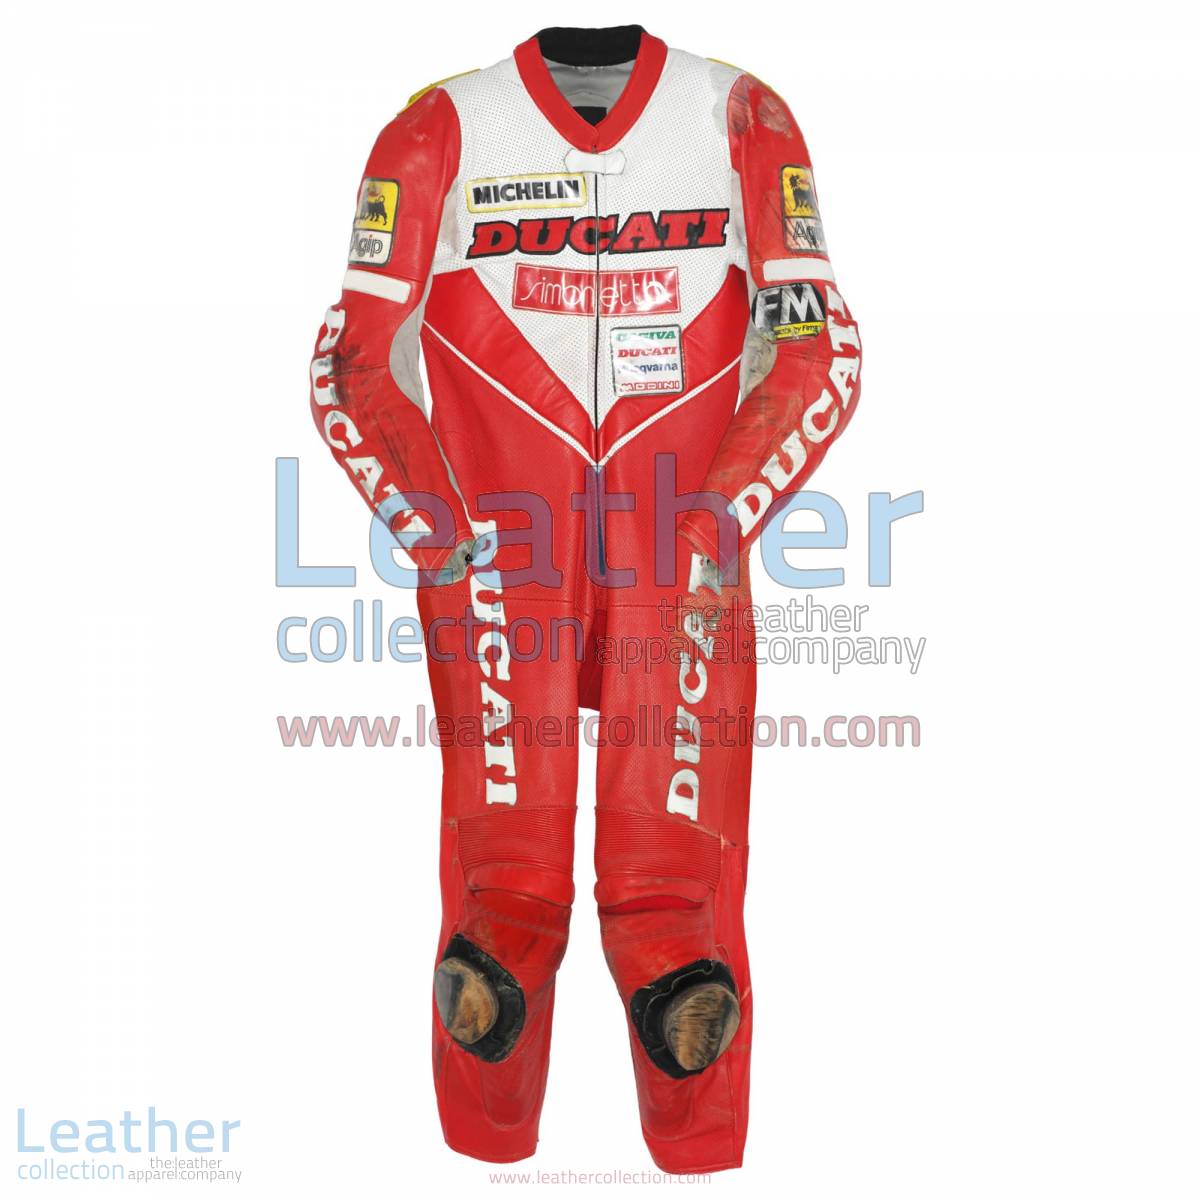 Giancarlo Falappa Ducati WSBK 1993 Leathers